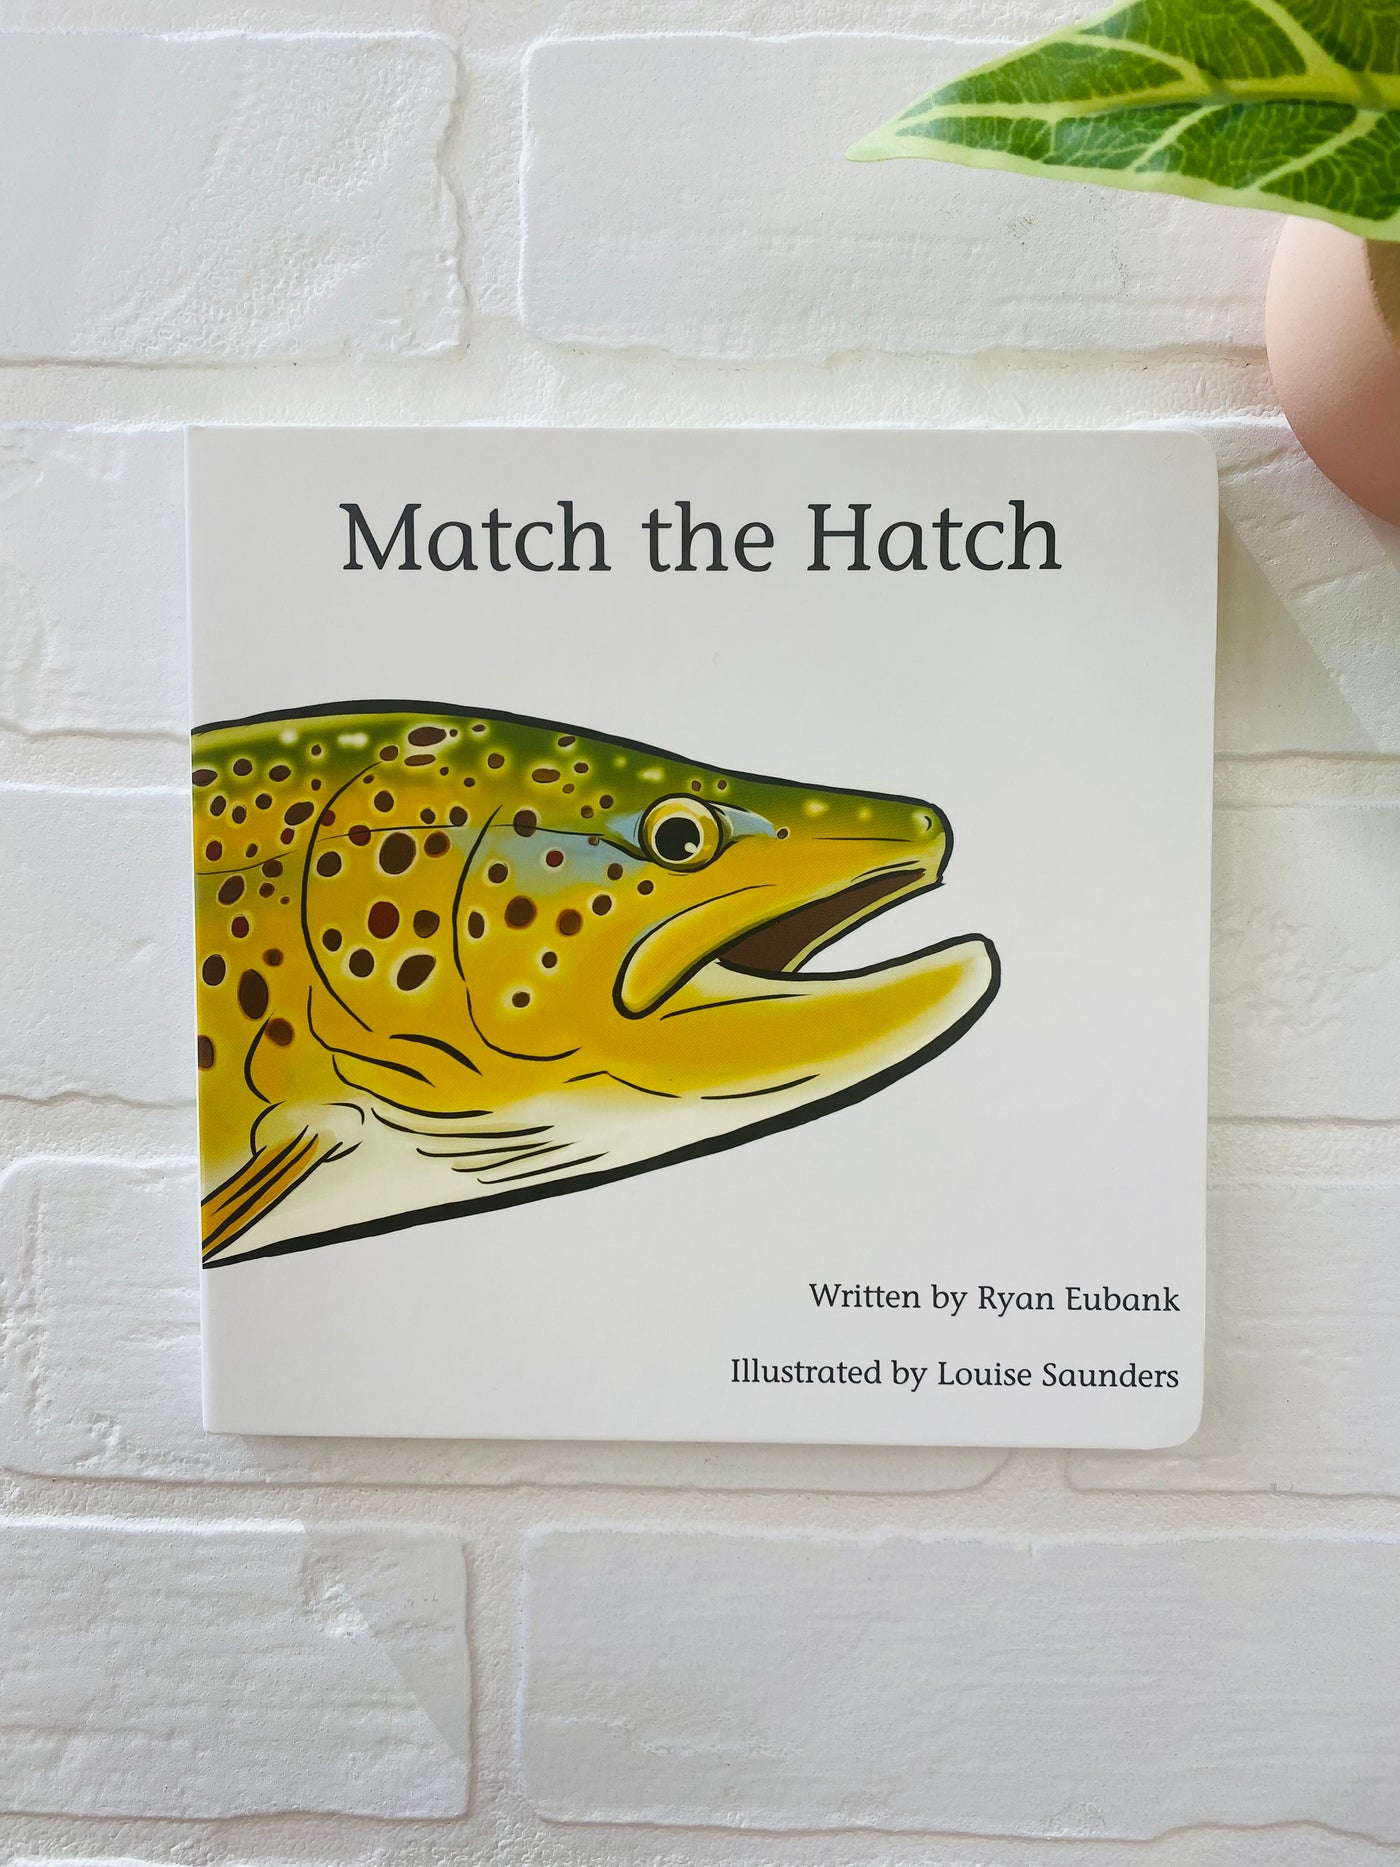 Match the hatch